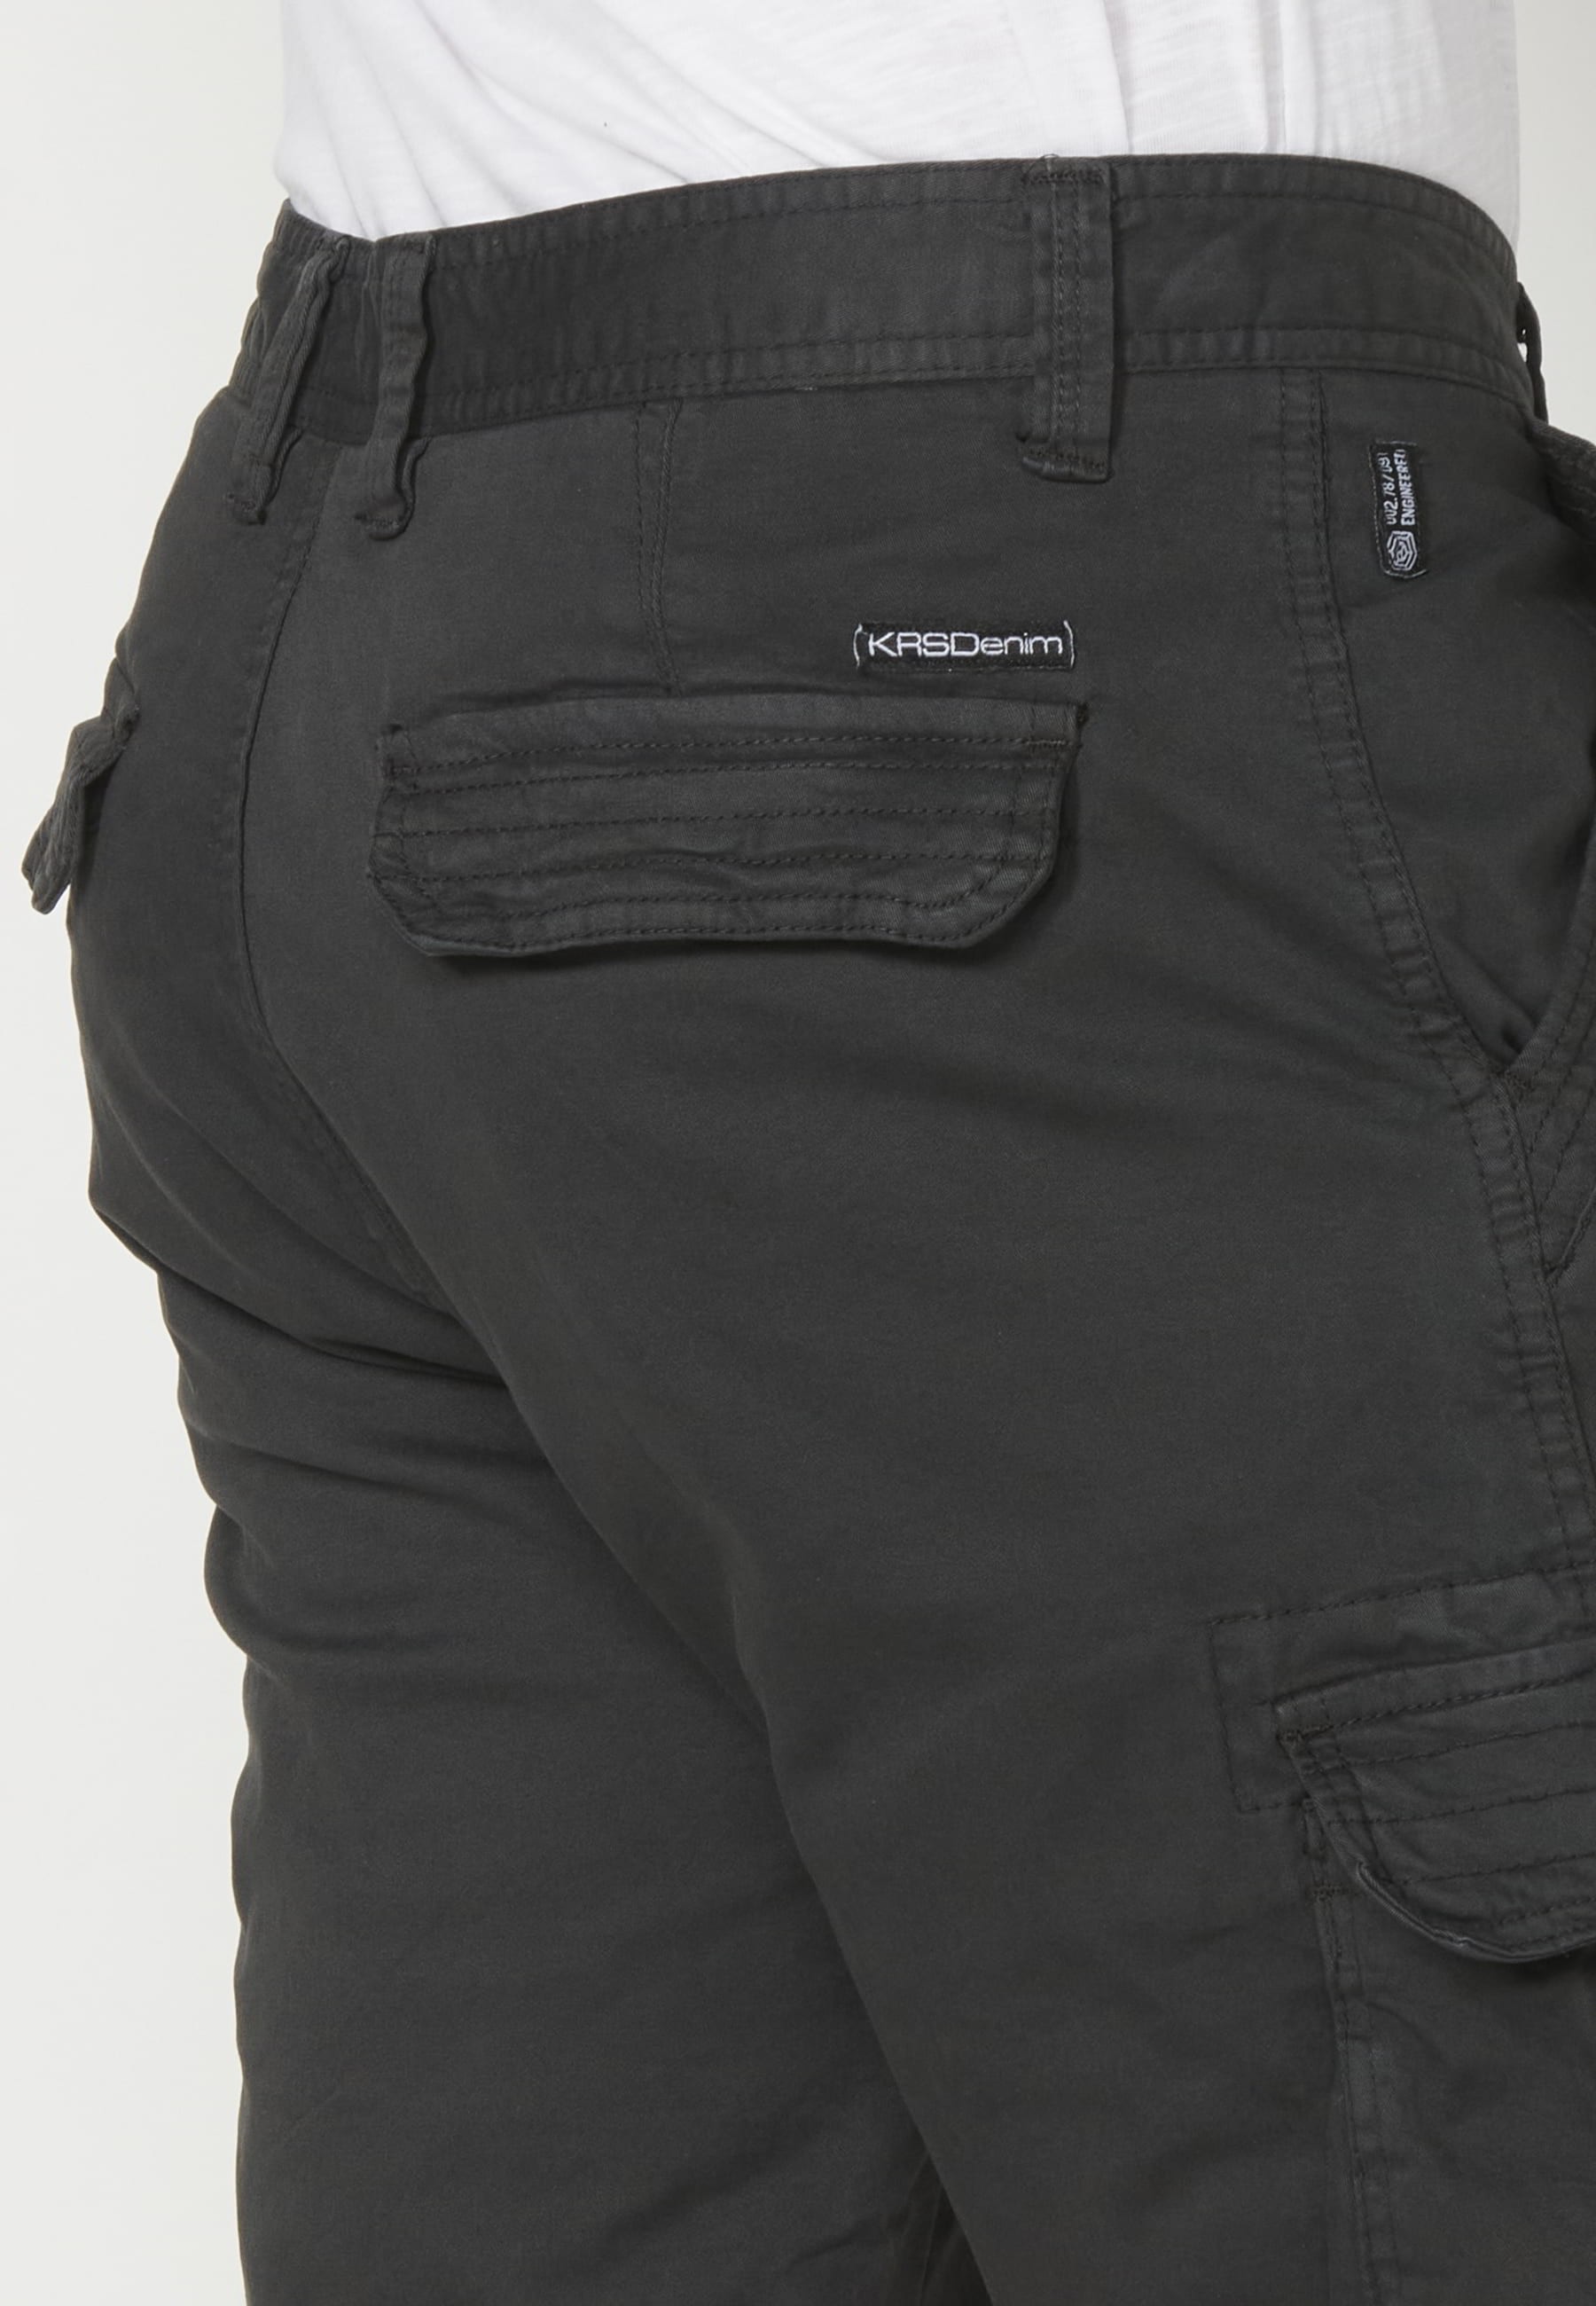 Pantalón corto Bermuda estilo cargo color Negro para Hombre